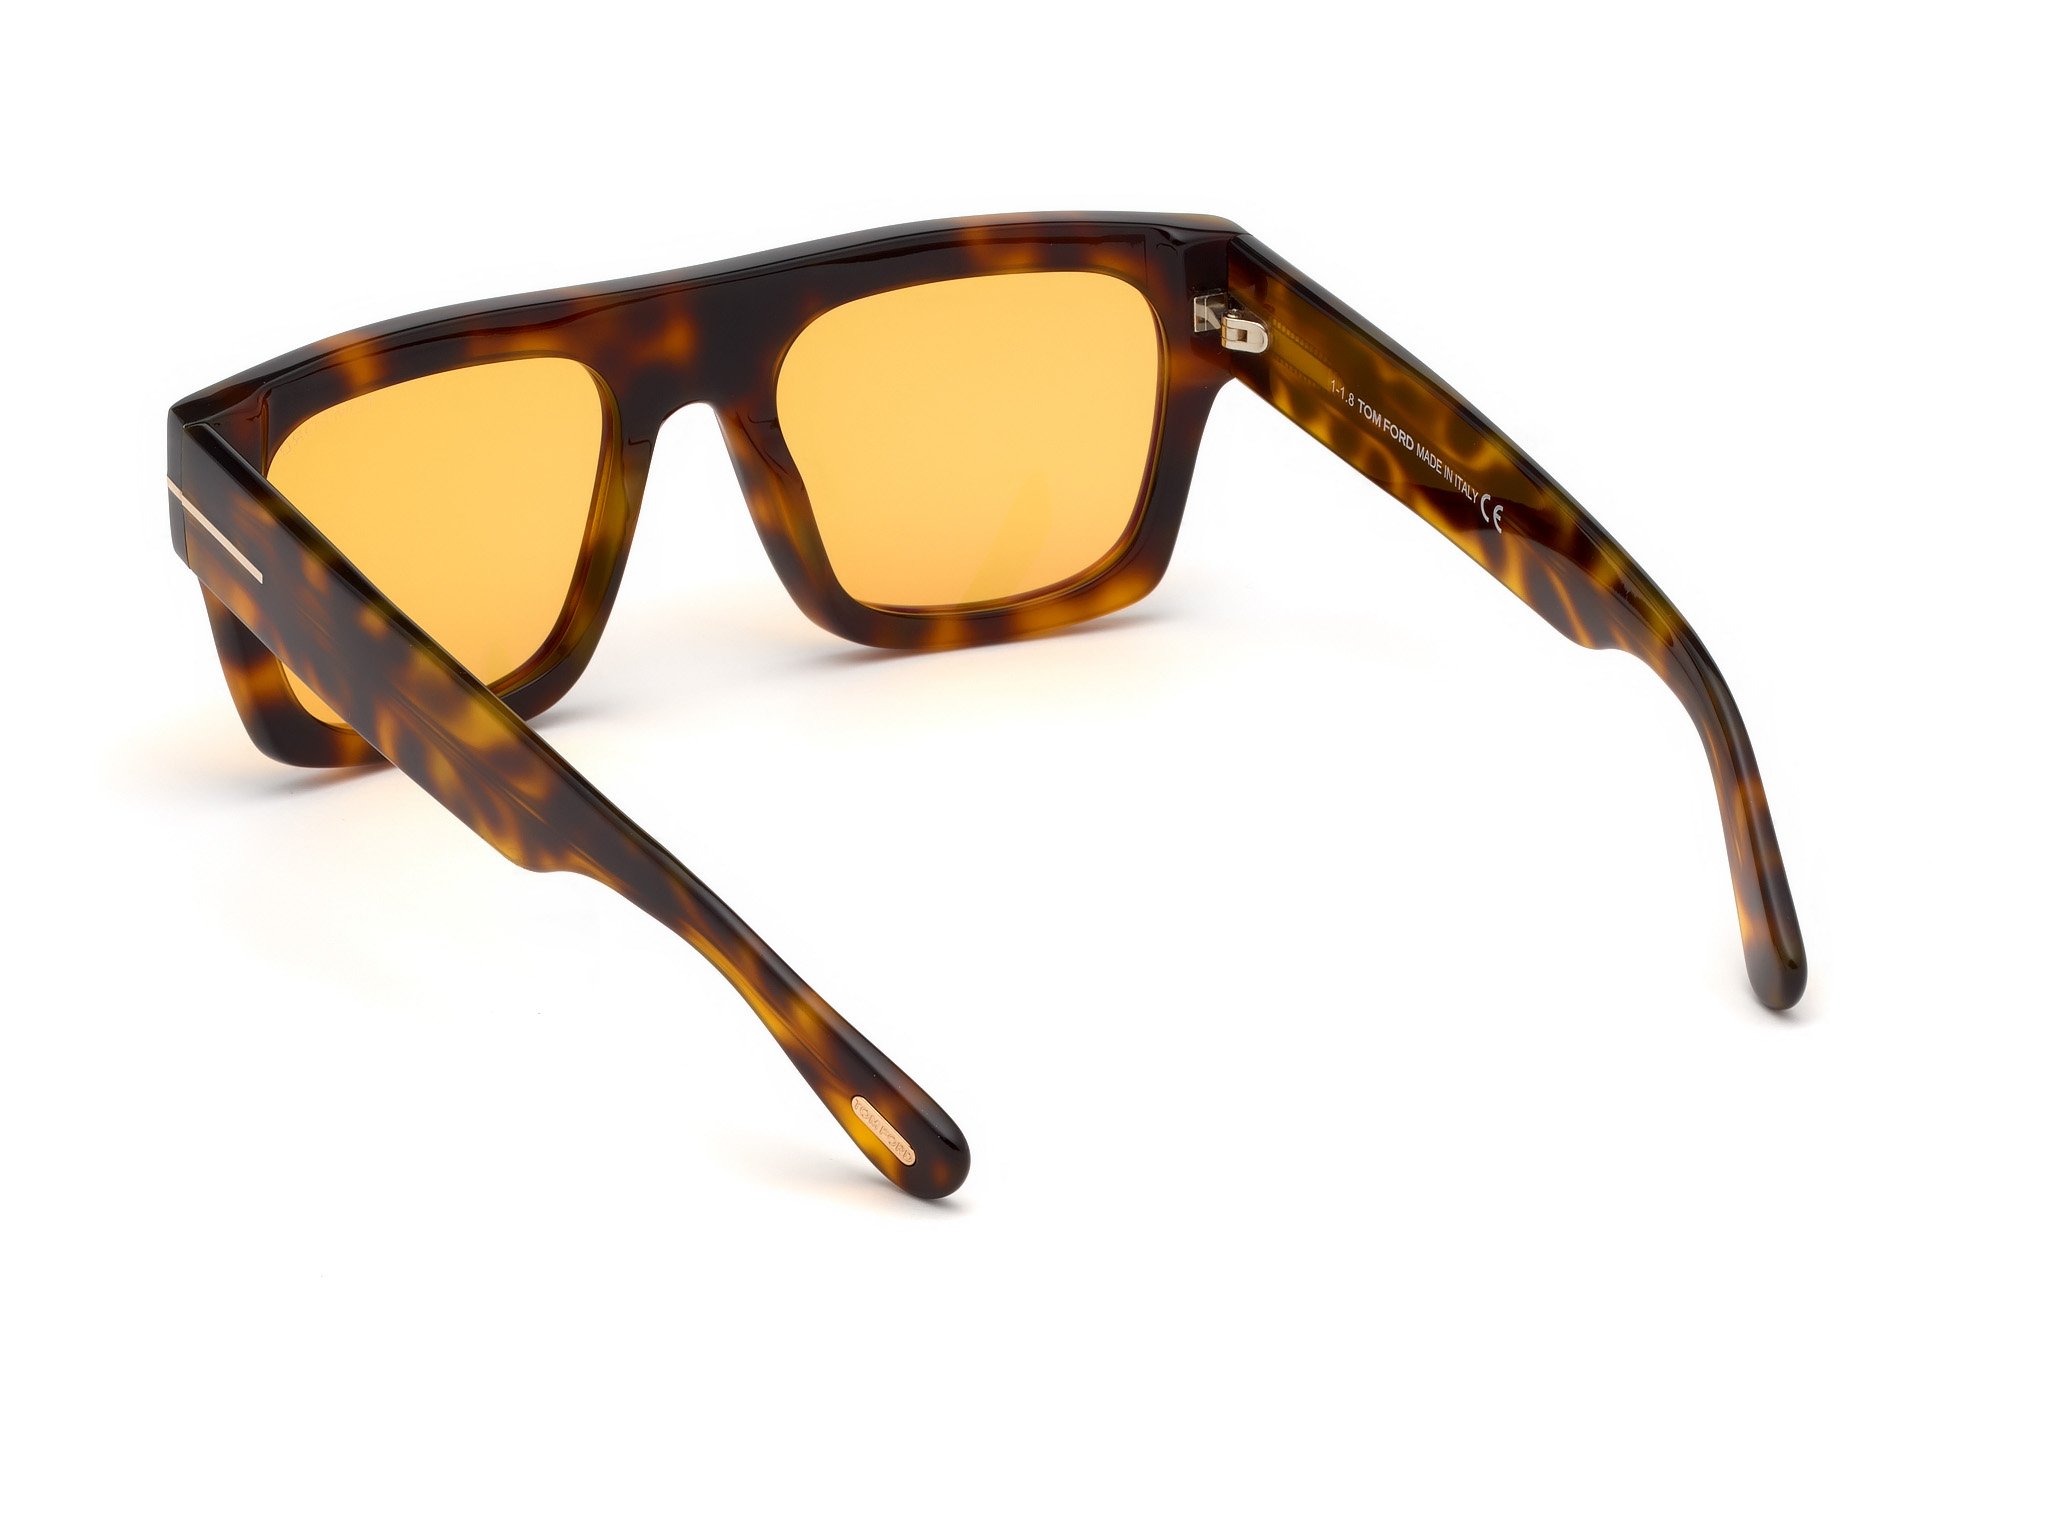 Das Bild zeigt die Sonnenbrille FT0711 56E von der Marke Tom Ford in havanna.